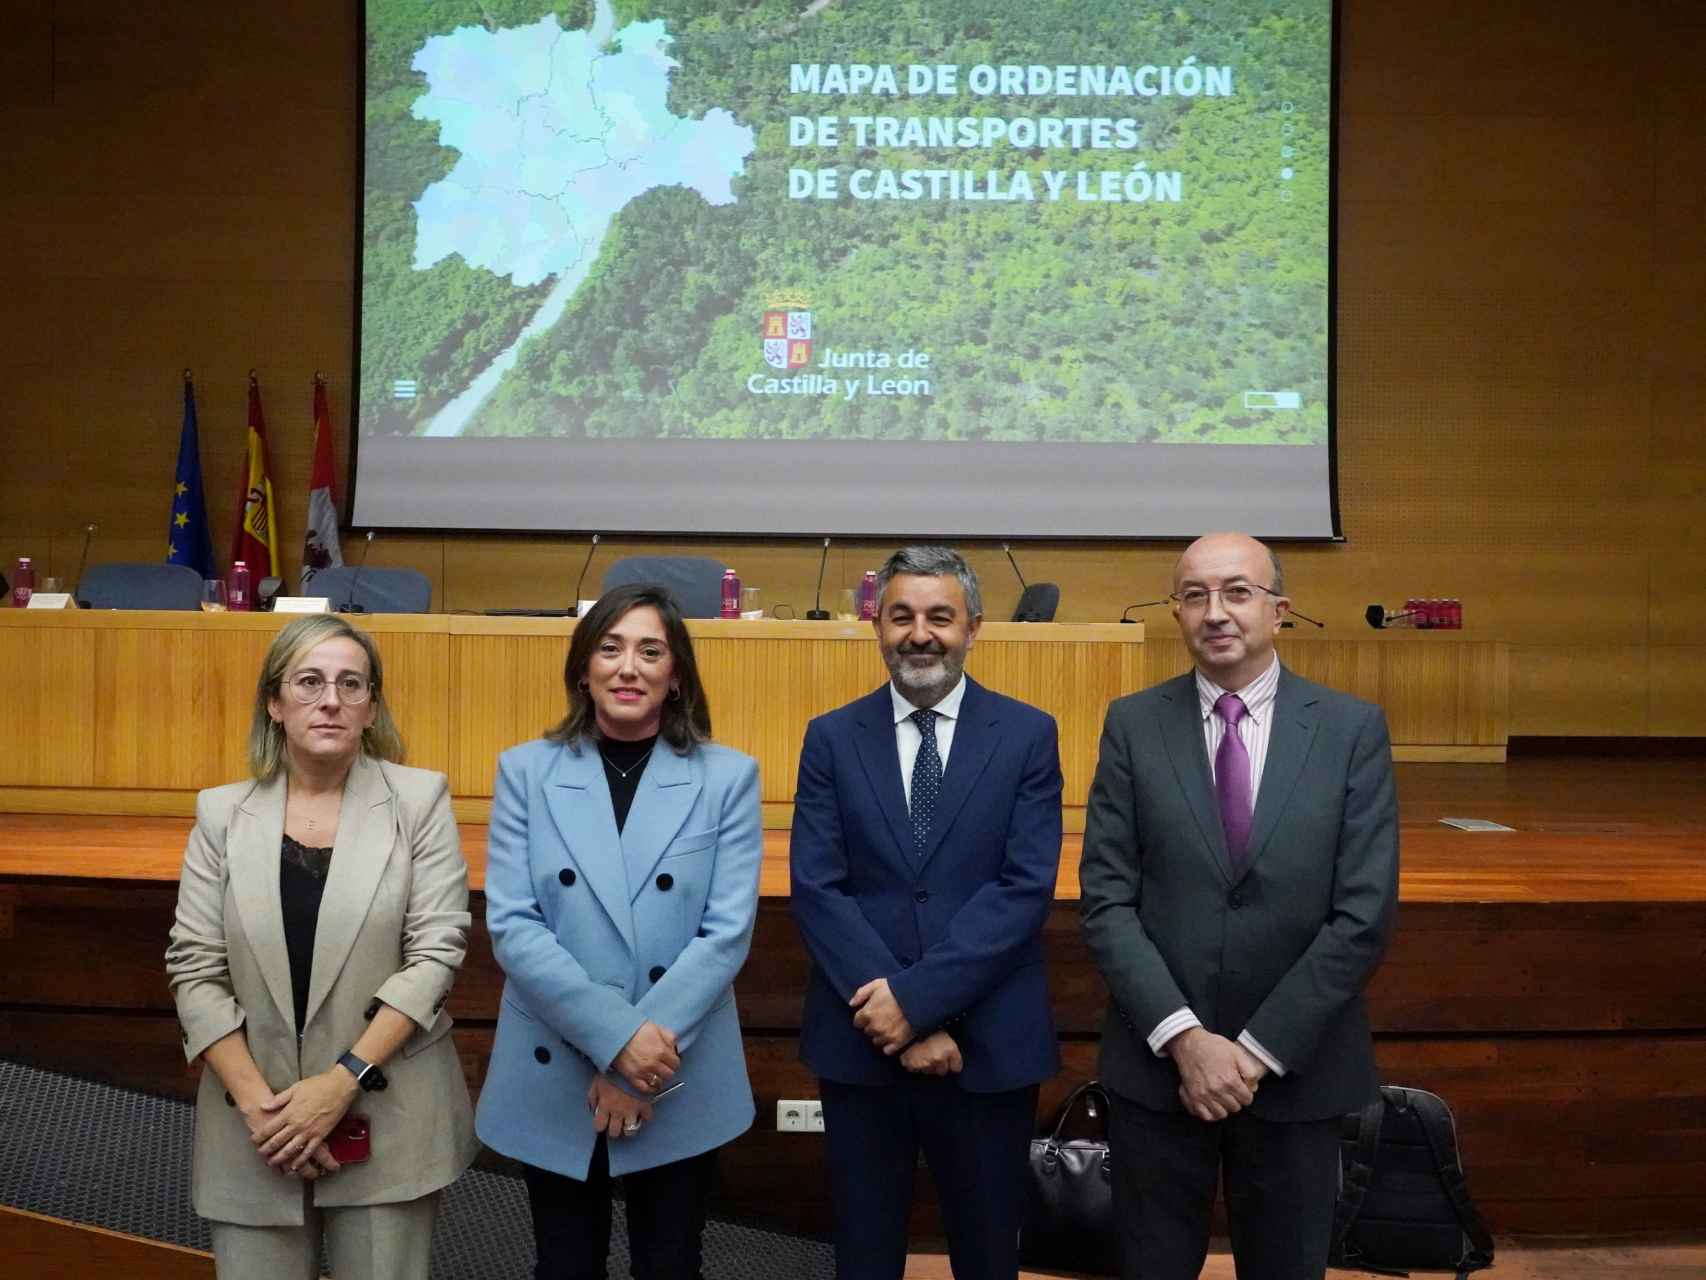 La consejera de Movilidad y Transformación Digital, María González Corral, flanqueada por los representantes de Galicia, Asturias y la Comunidad de Madrid, este martes.